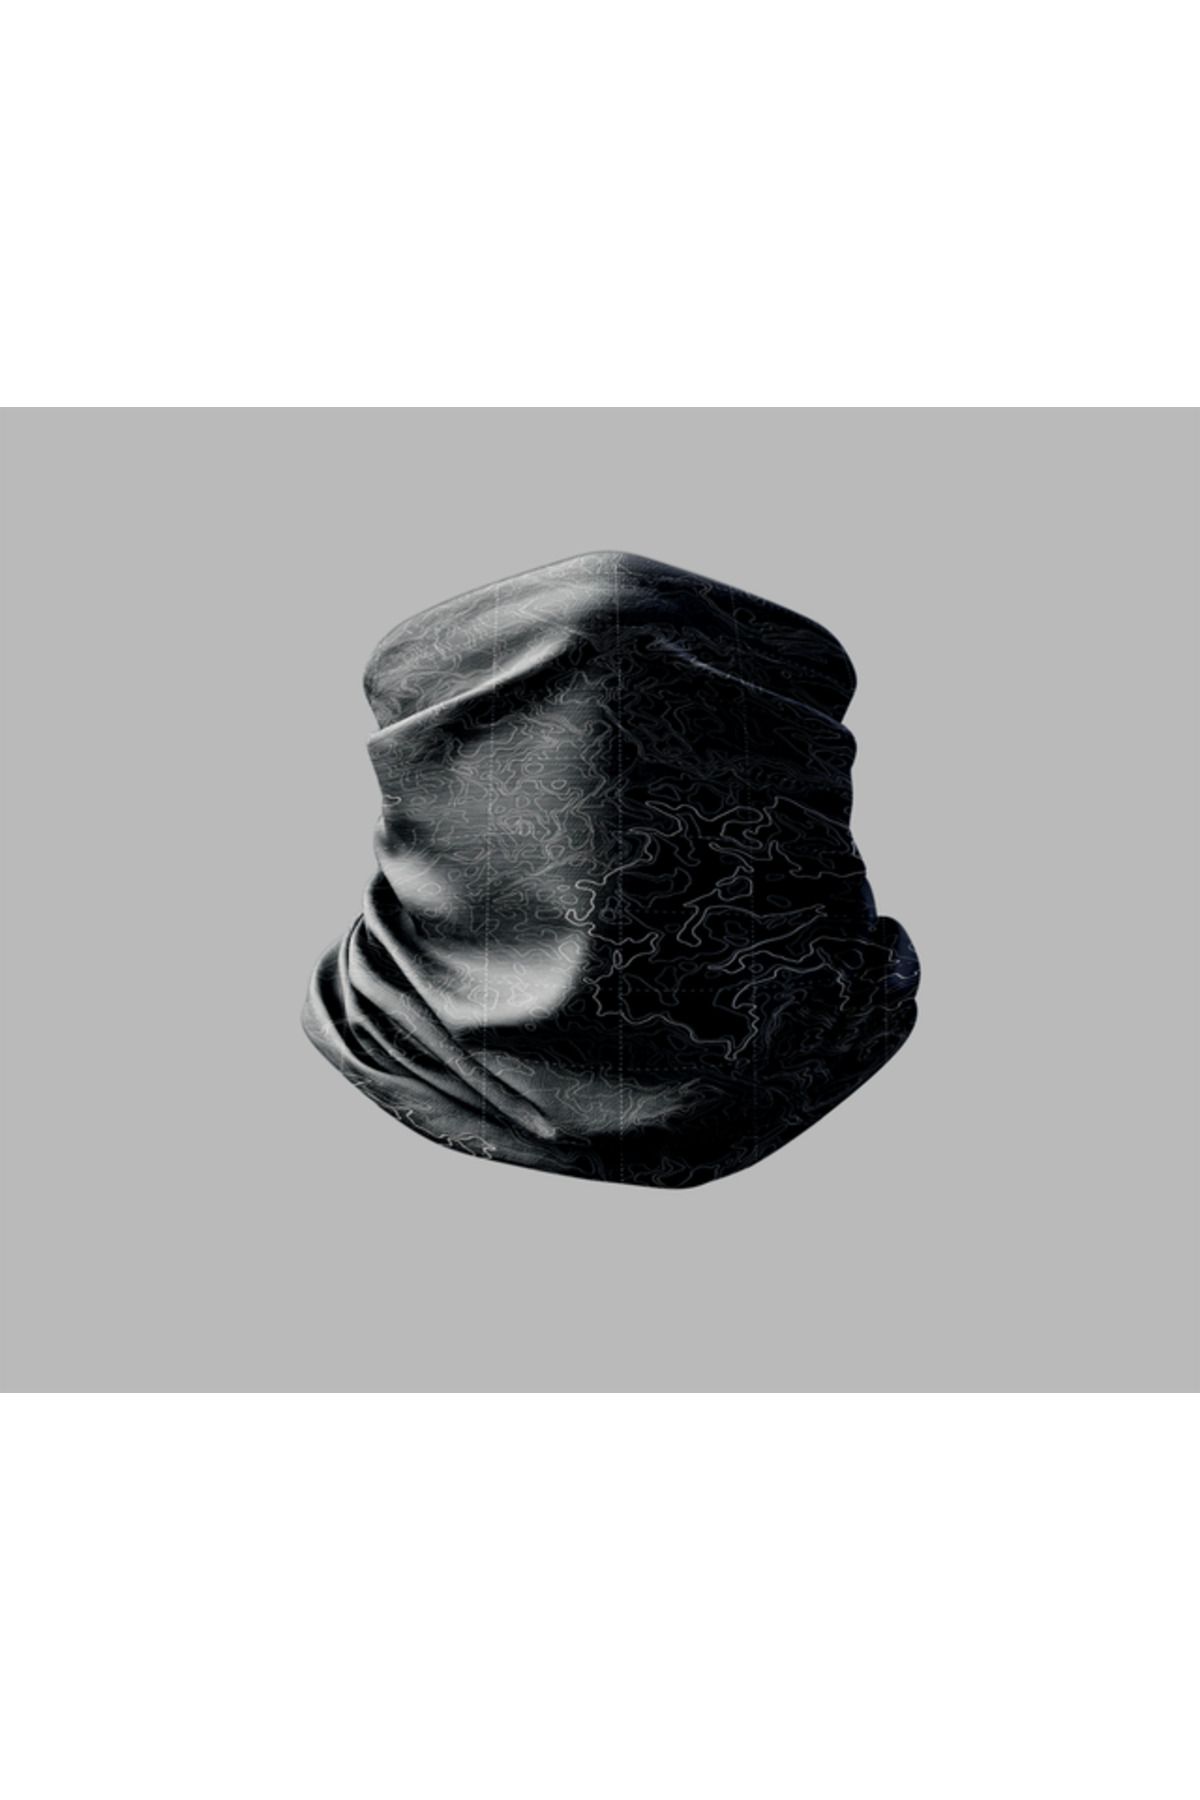 Buffalo Ebru Sanatı Tasarımlı Motorcu Buff Maske Outdoor Boyunluk Unisex Bandana